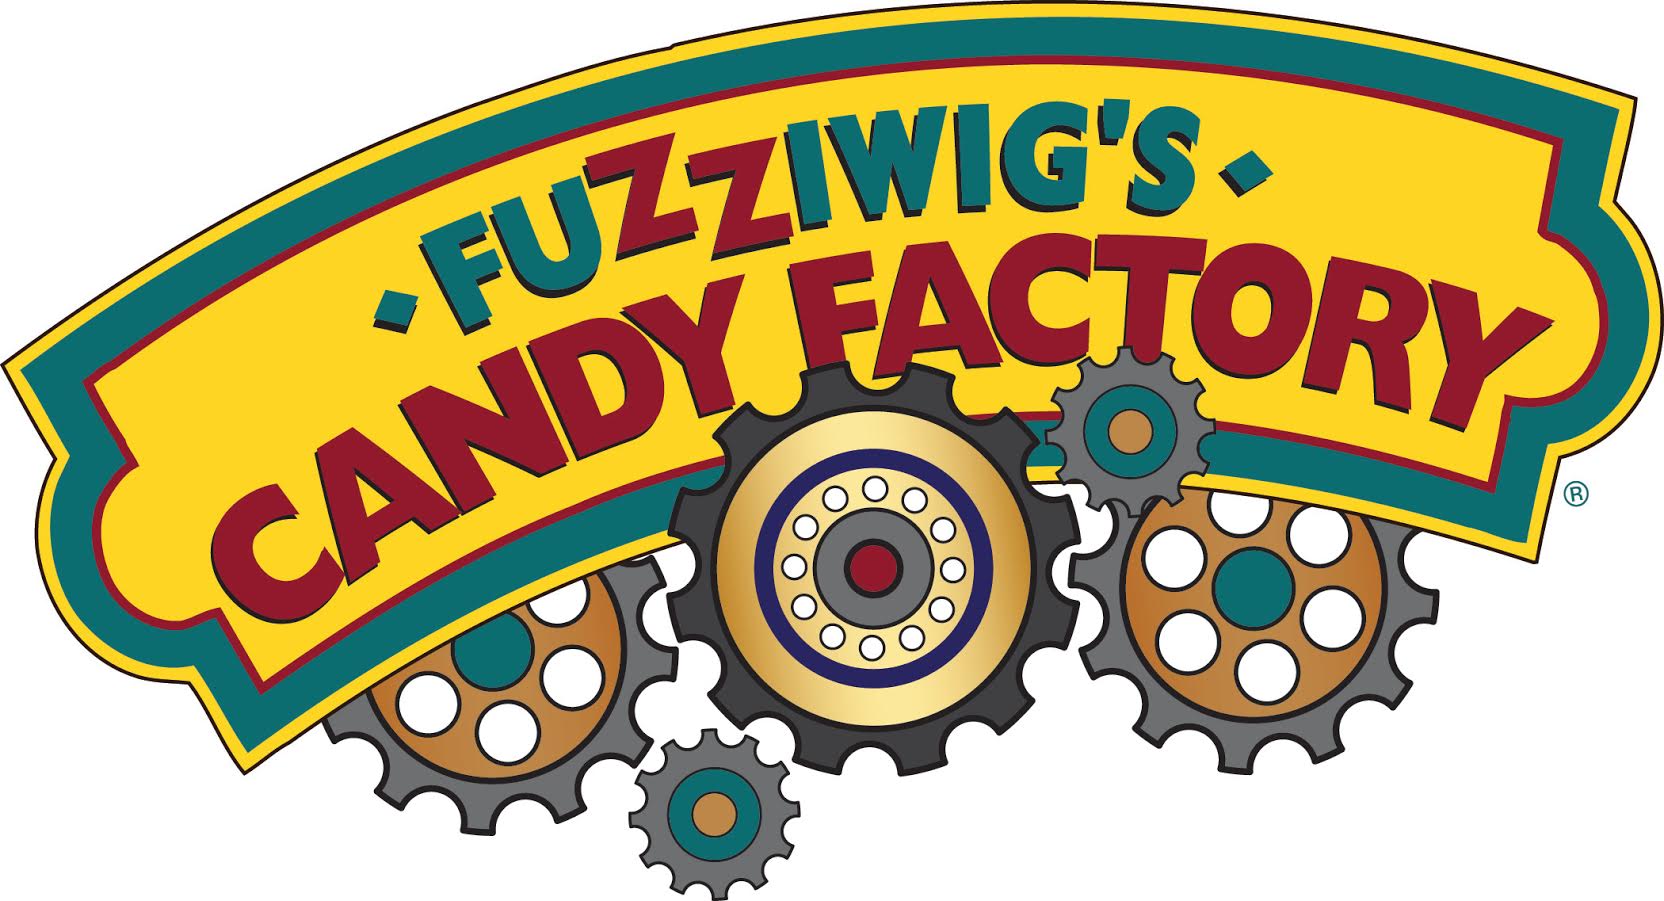 متجر Fuzziwig’s يقدم المصّاصات الذهبية من عيار 24 قيراط إحتفالاً بحلول سنة 2017